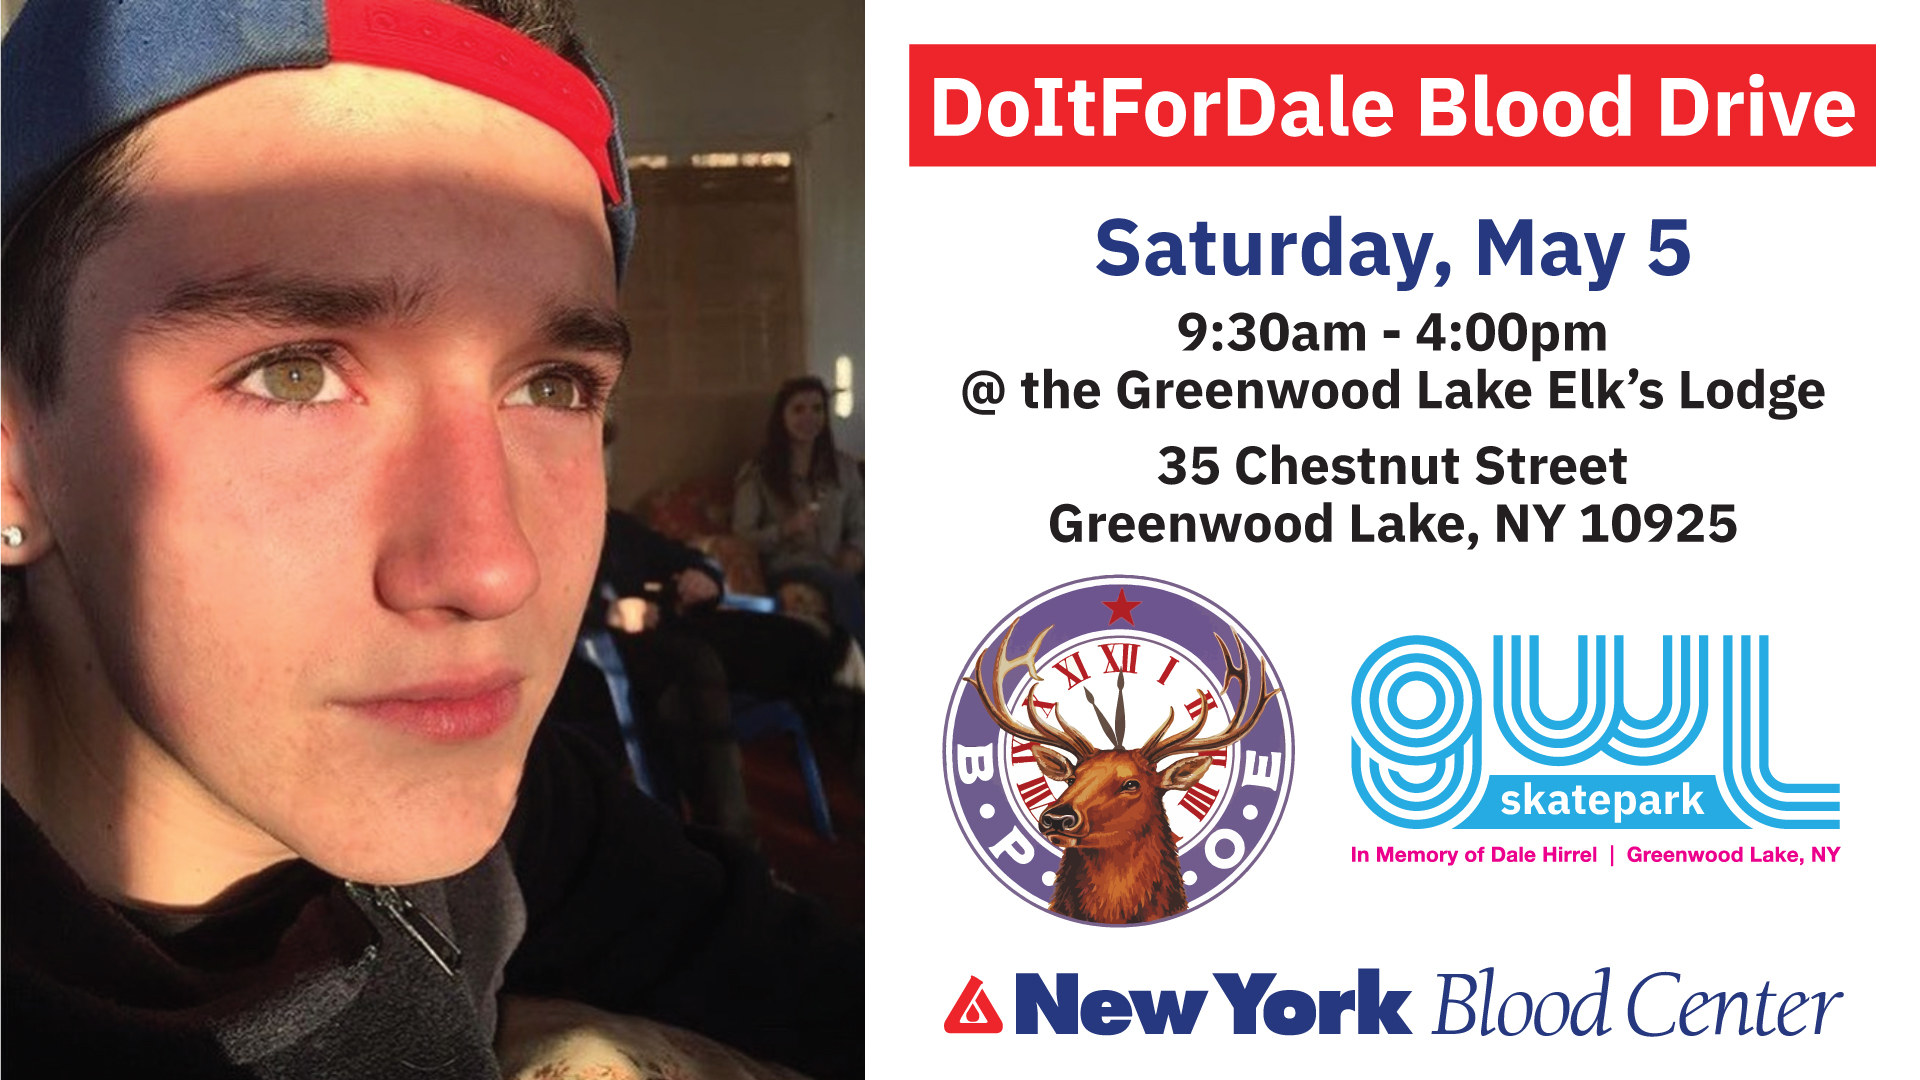 Do it for Dale Blood Drive, GWL Skatepark, Dale Hirrel